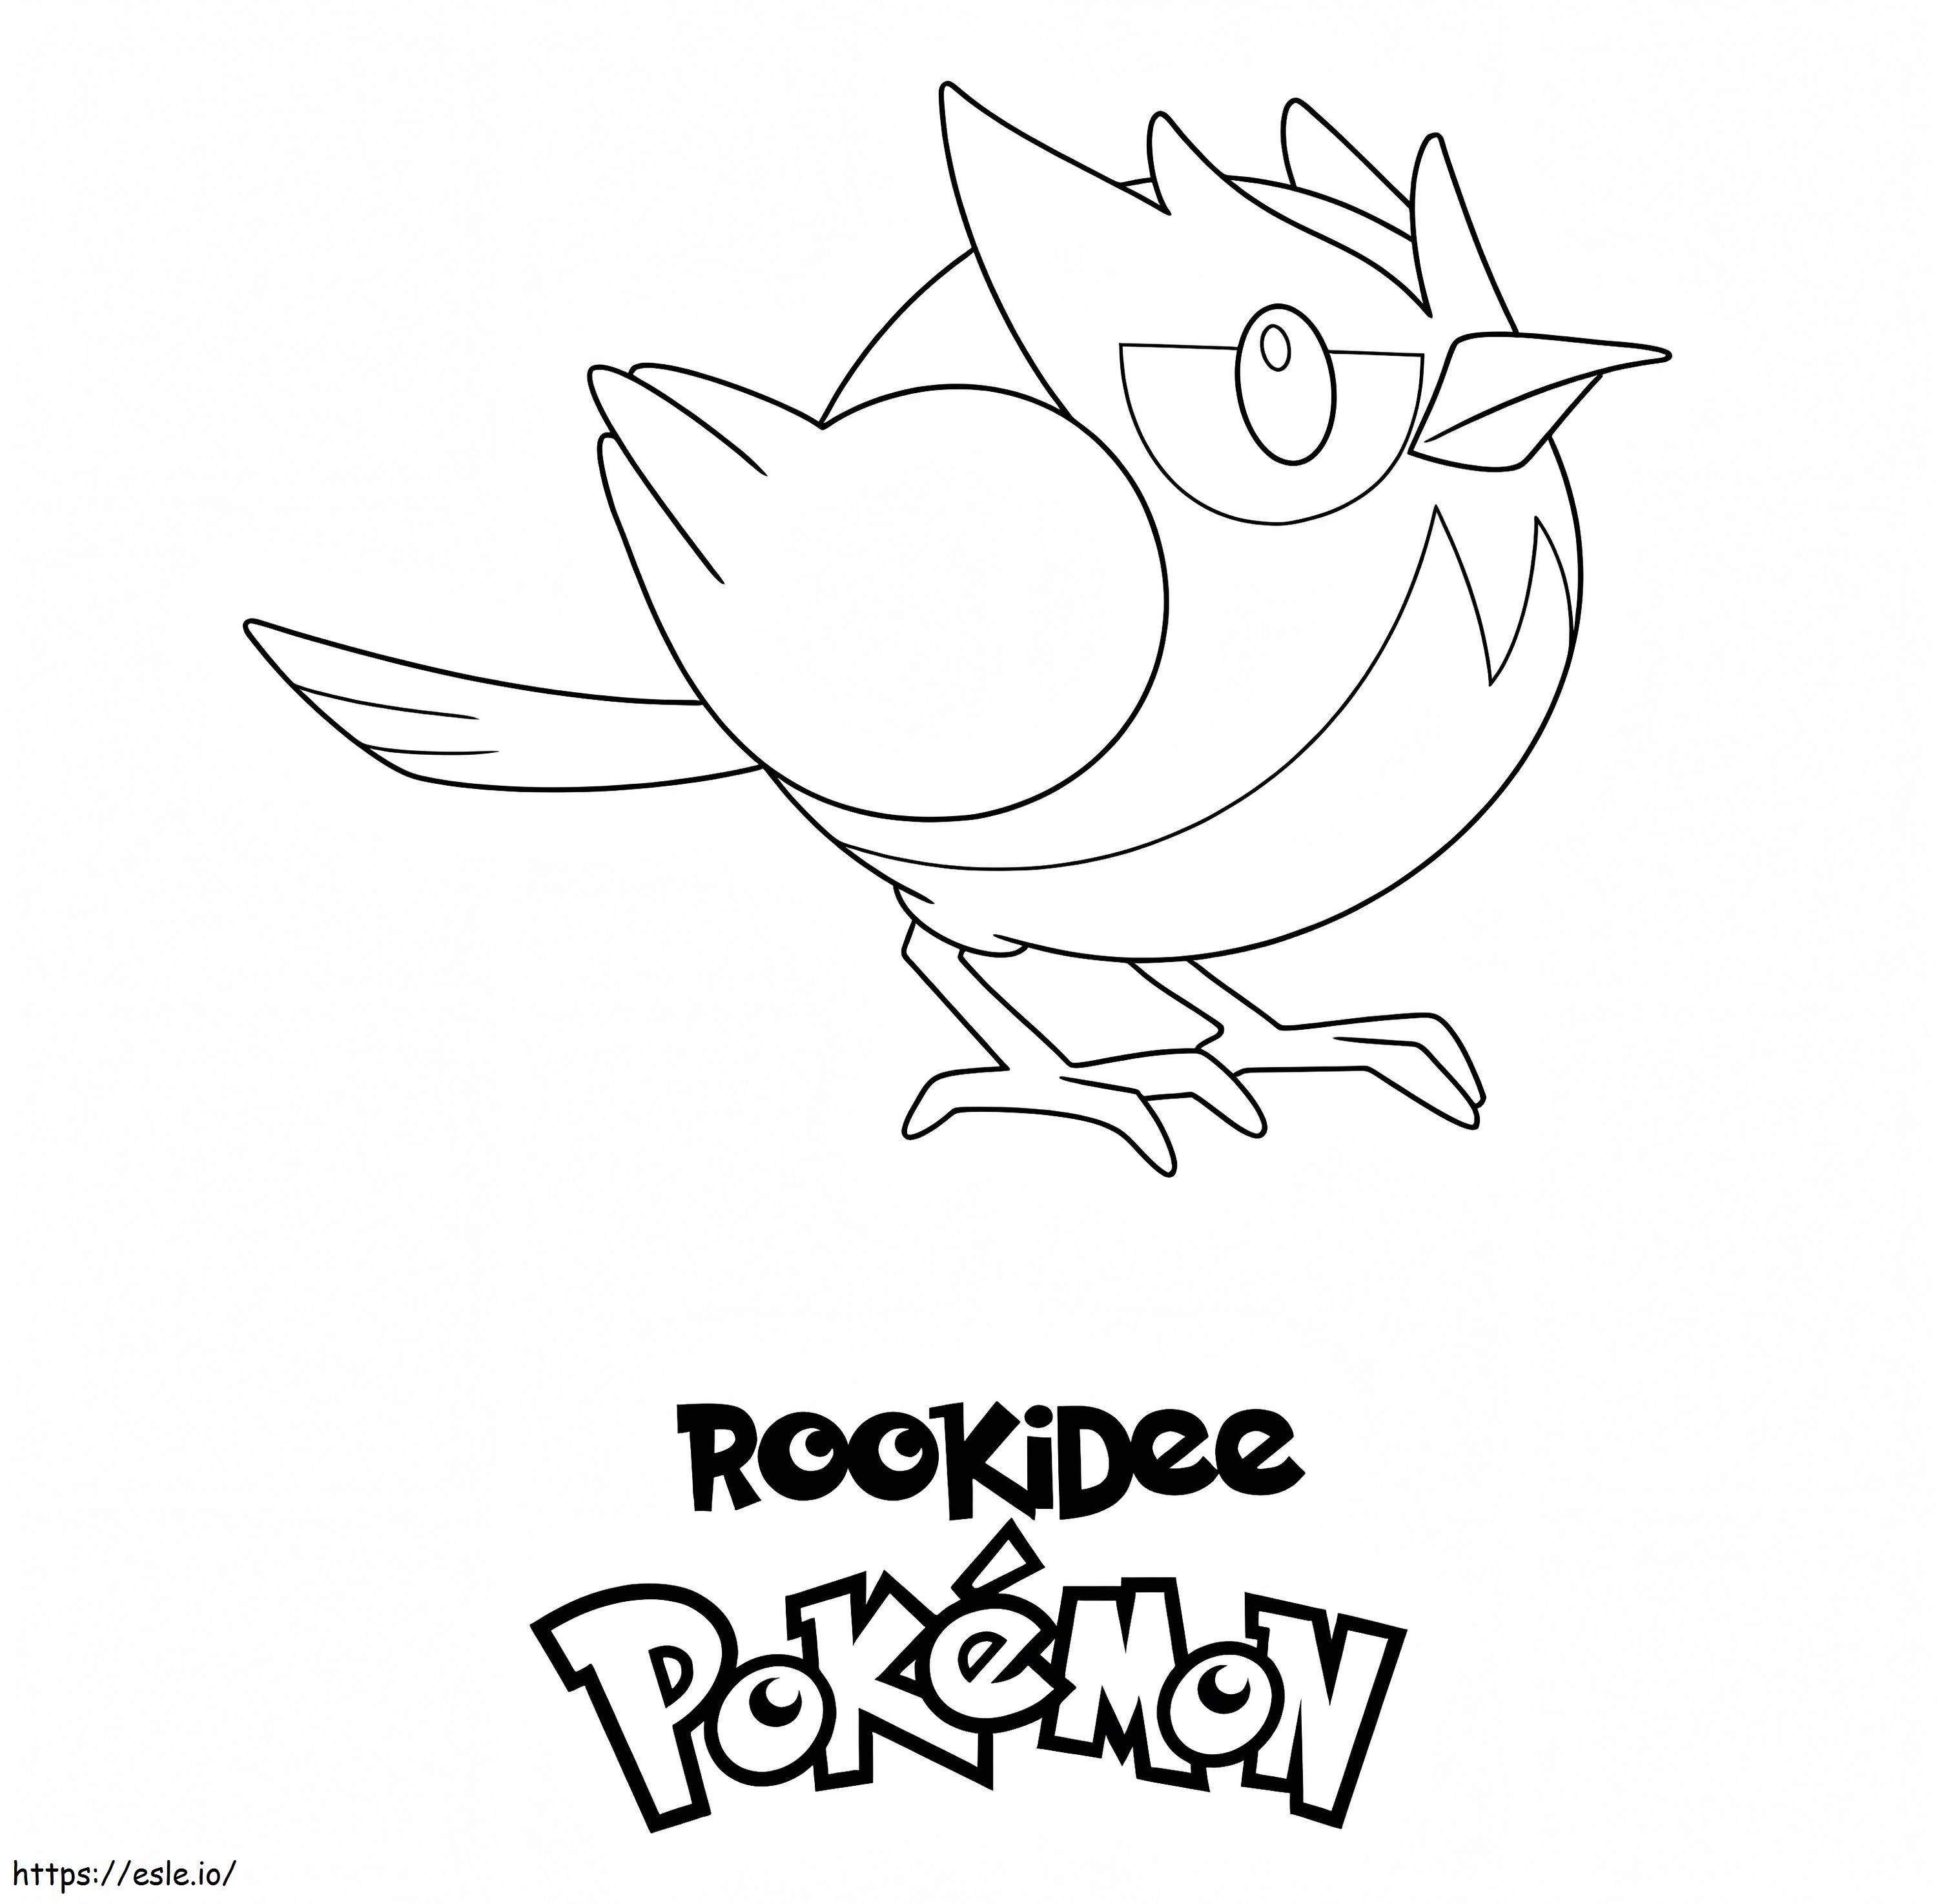 Rookidee-Pokémon ausmalbilder